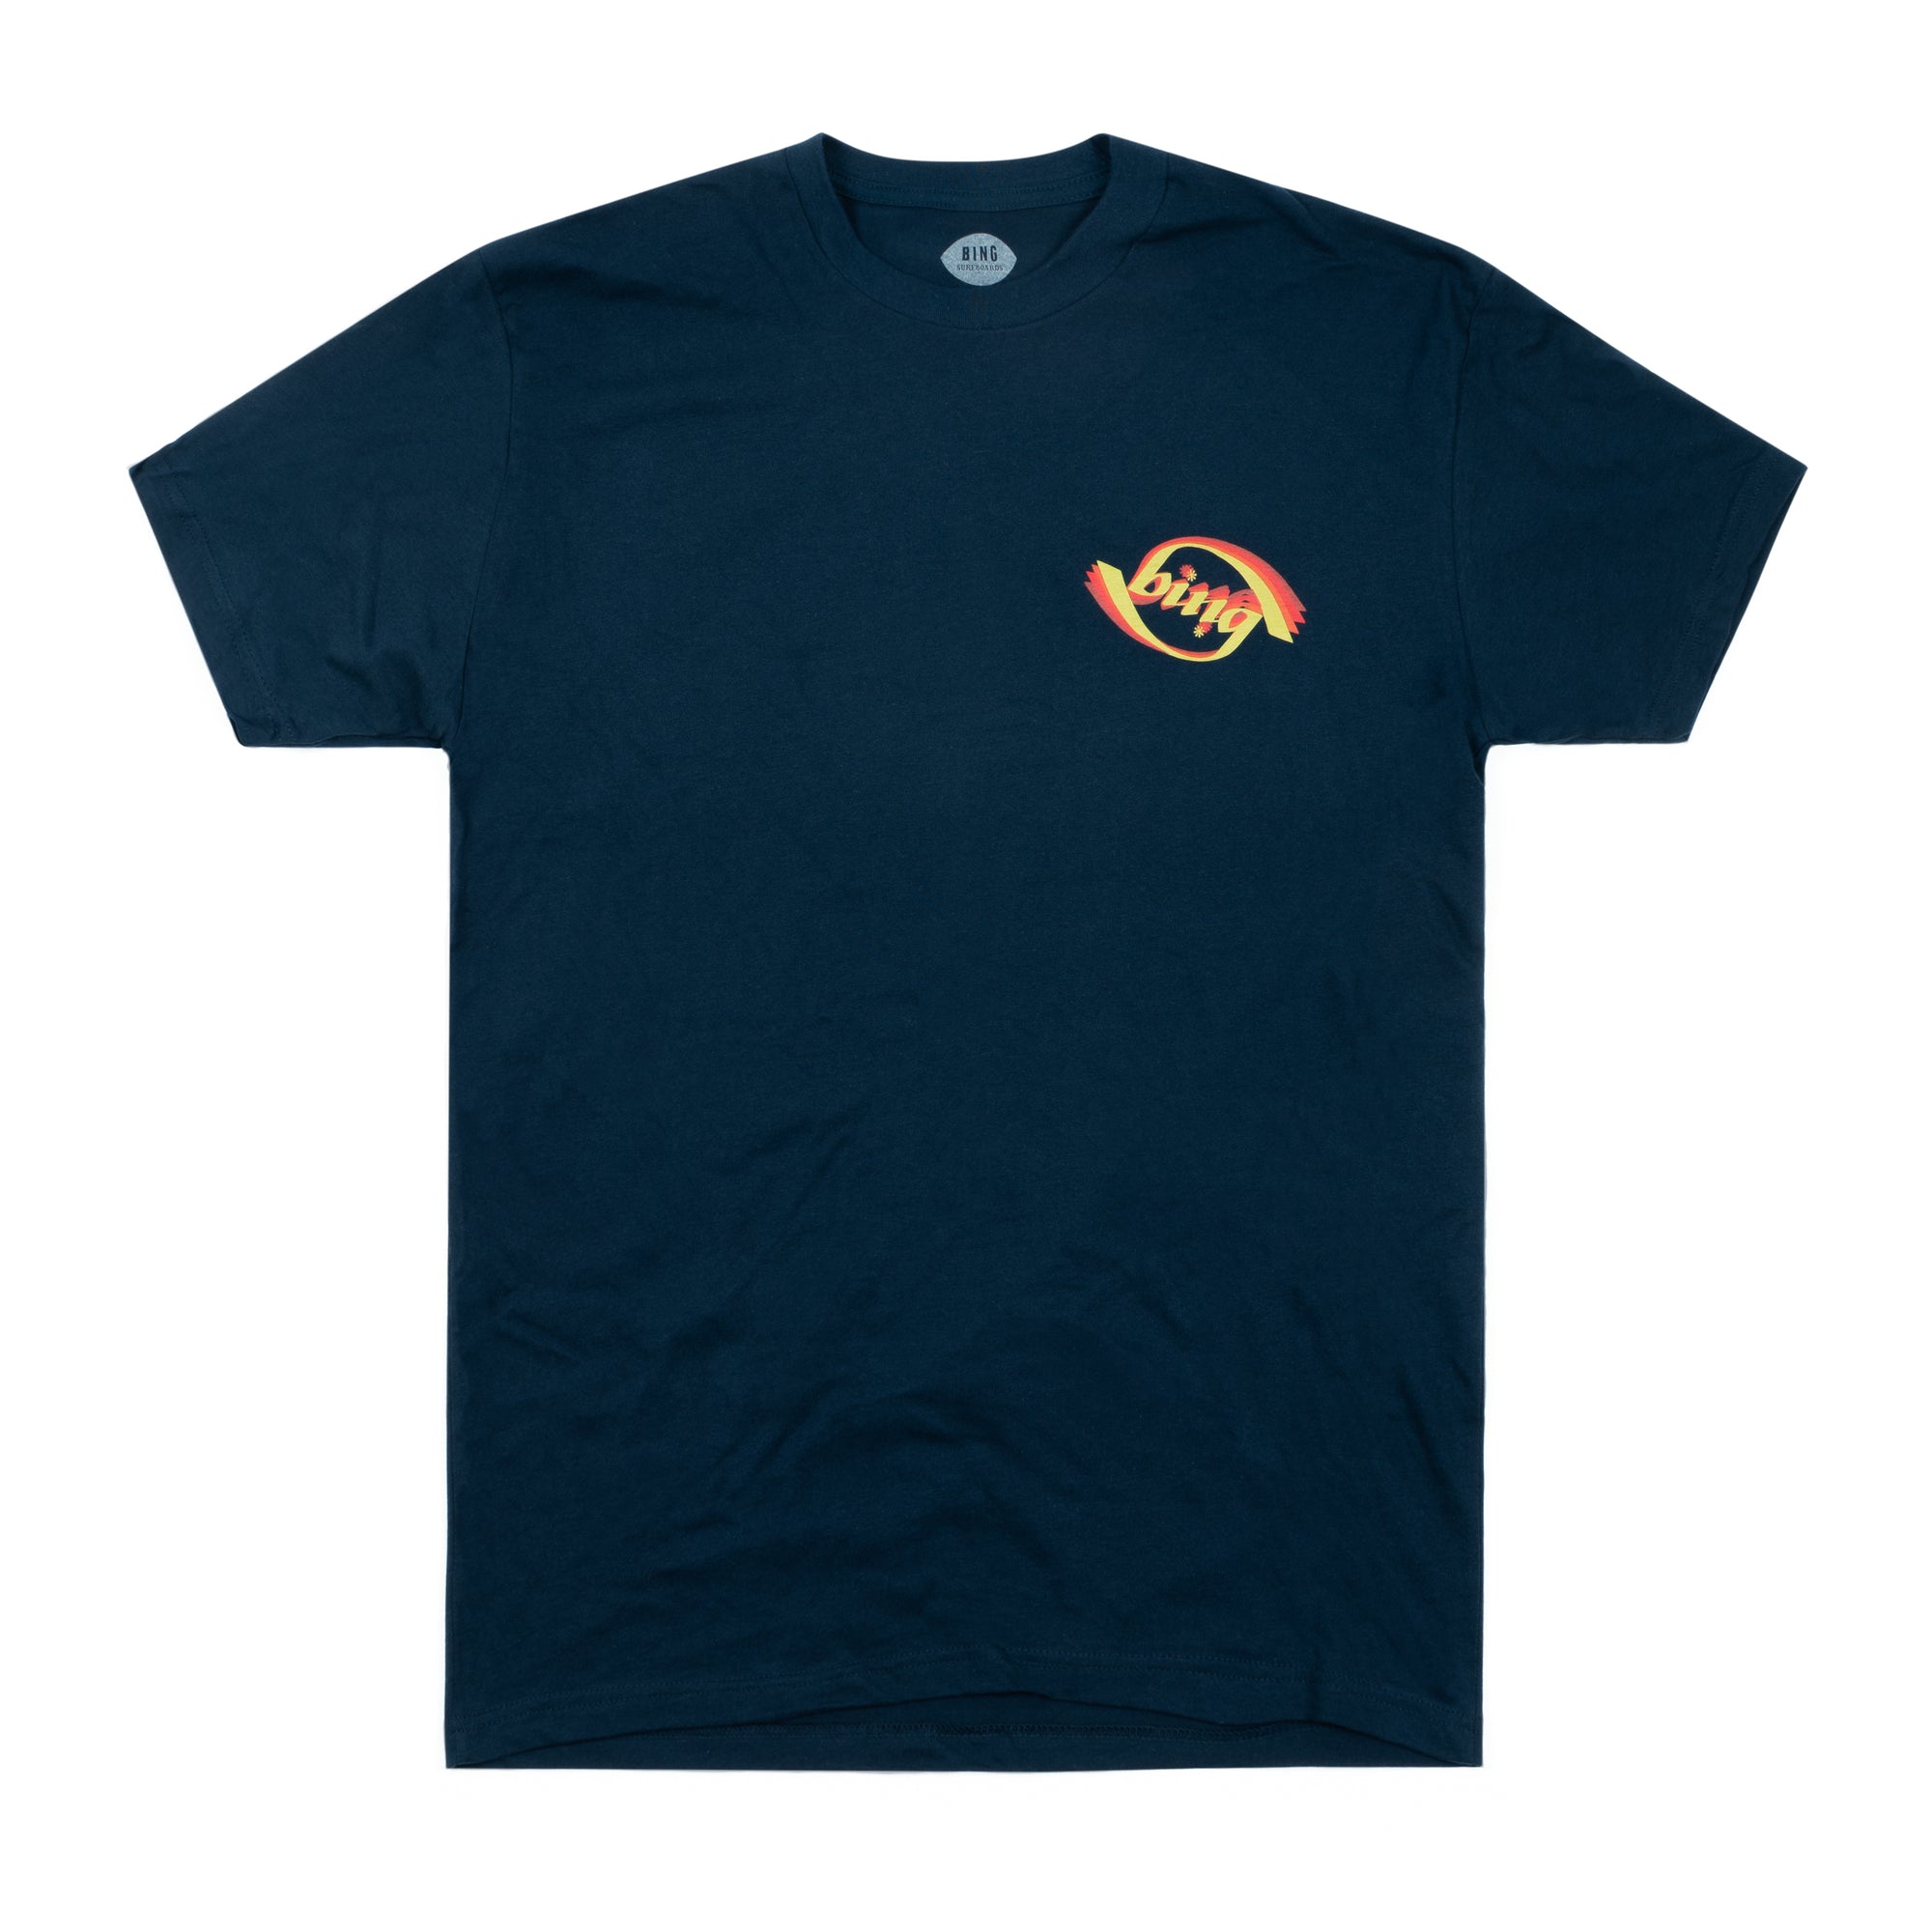 ROTATION Premium S/S T-Shirt - Midnight Navy